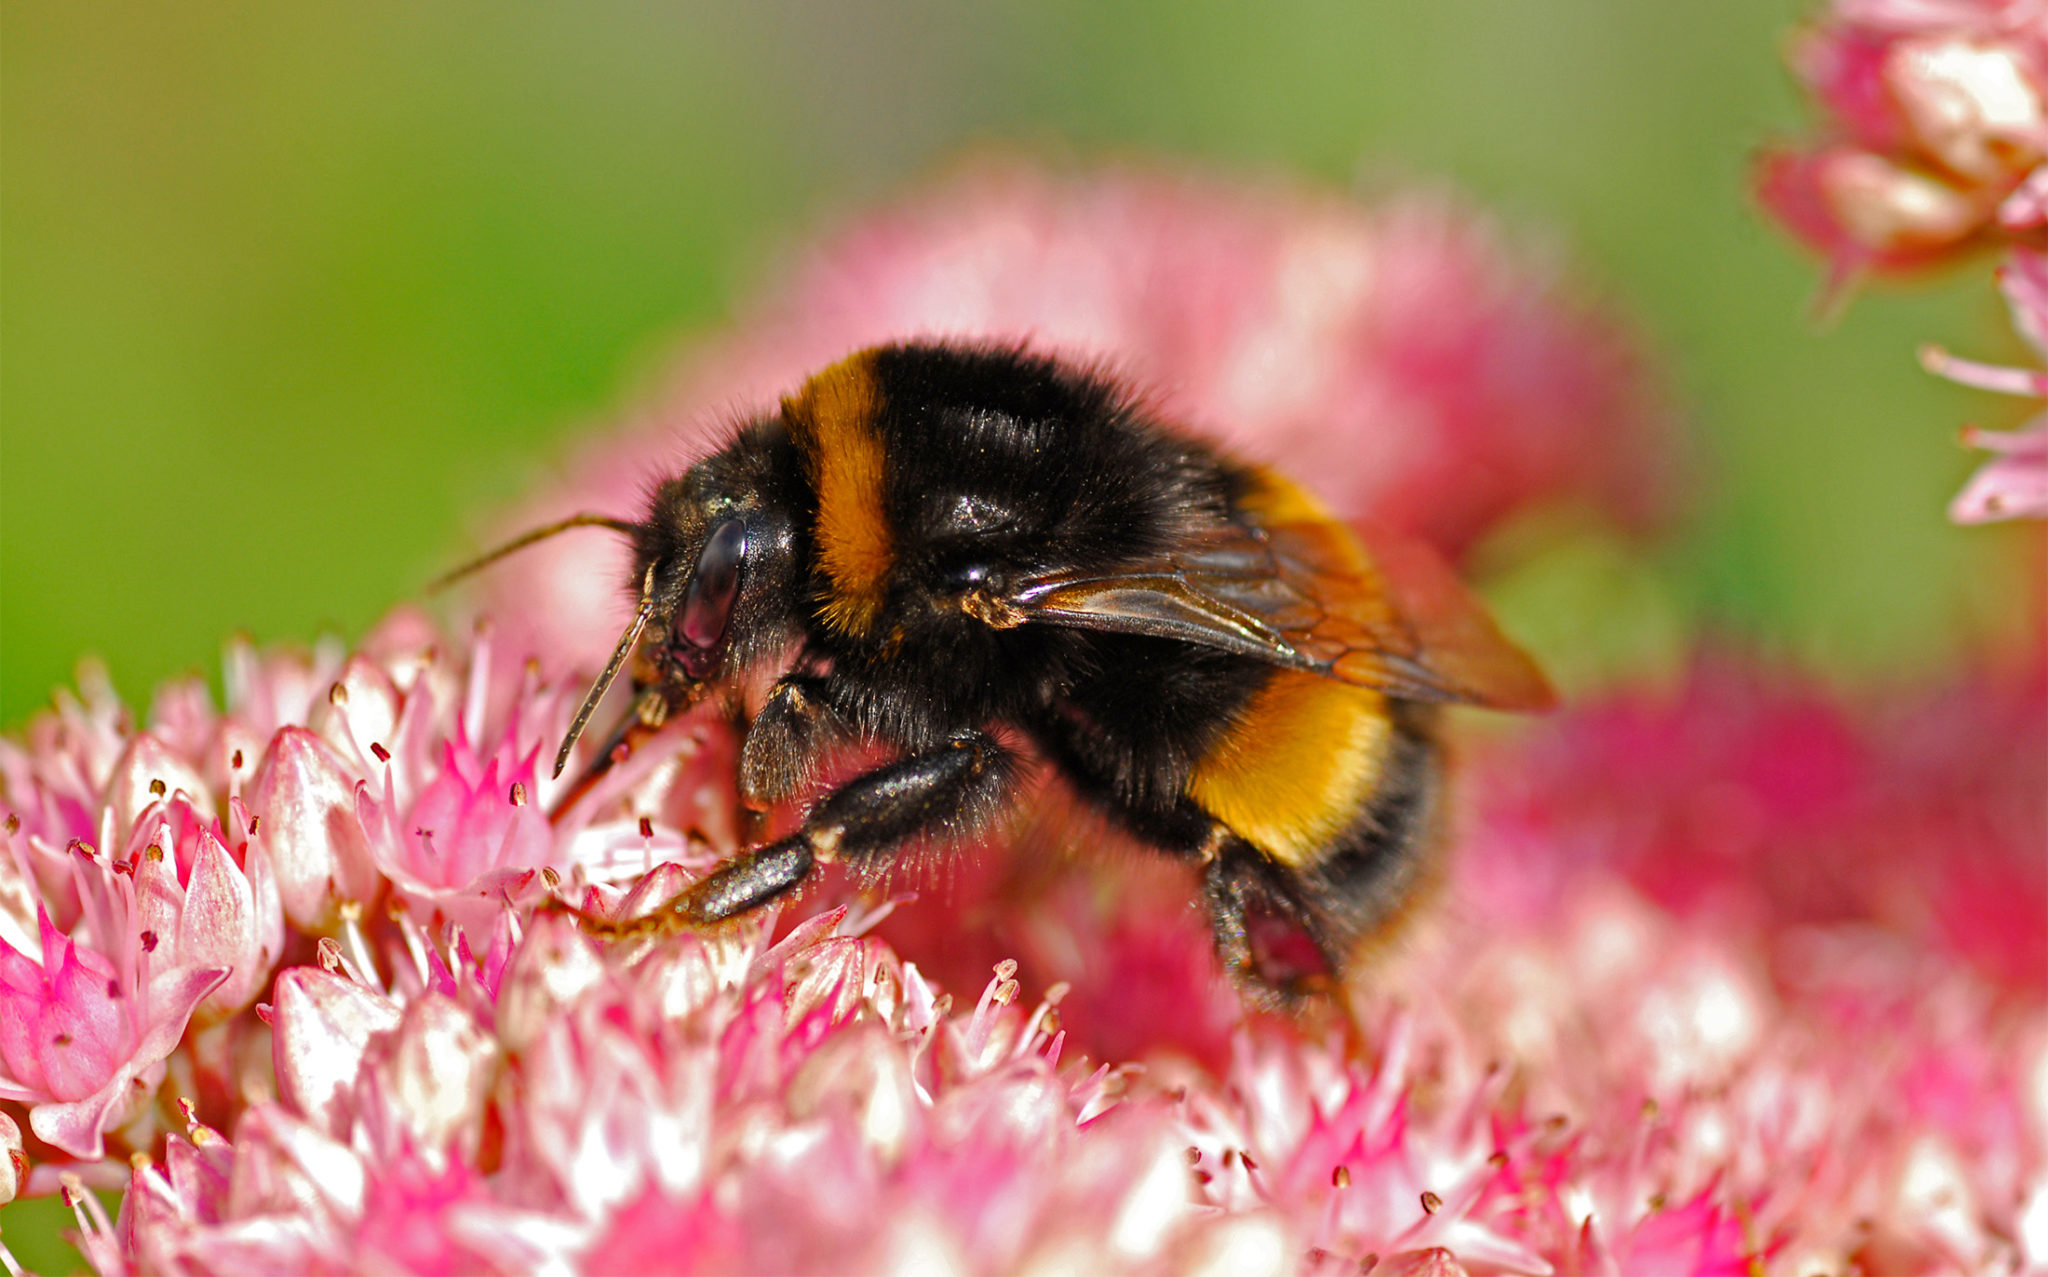 Five common garden bees